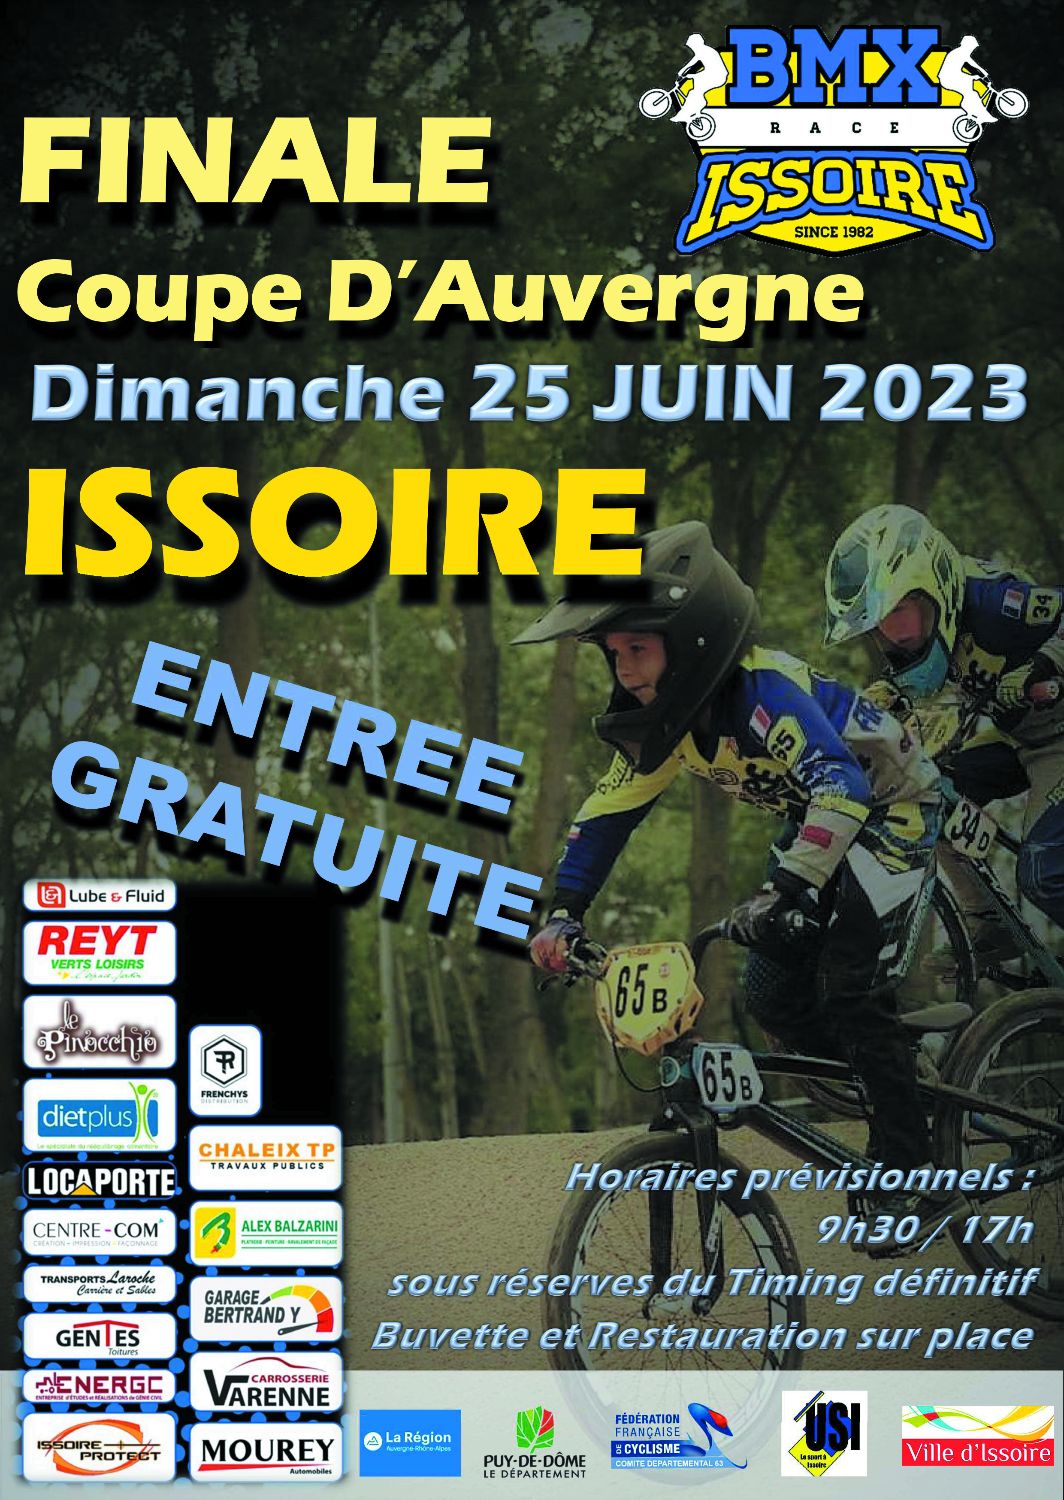 Finale Coupe d'Auvergne - 25 Juin 2023 - Issoire